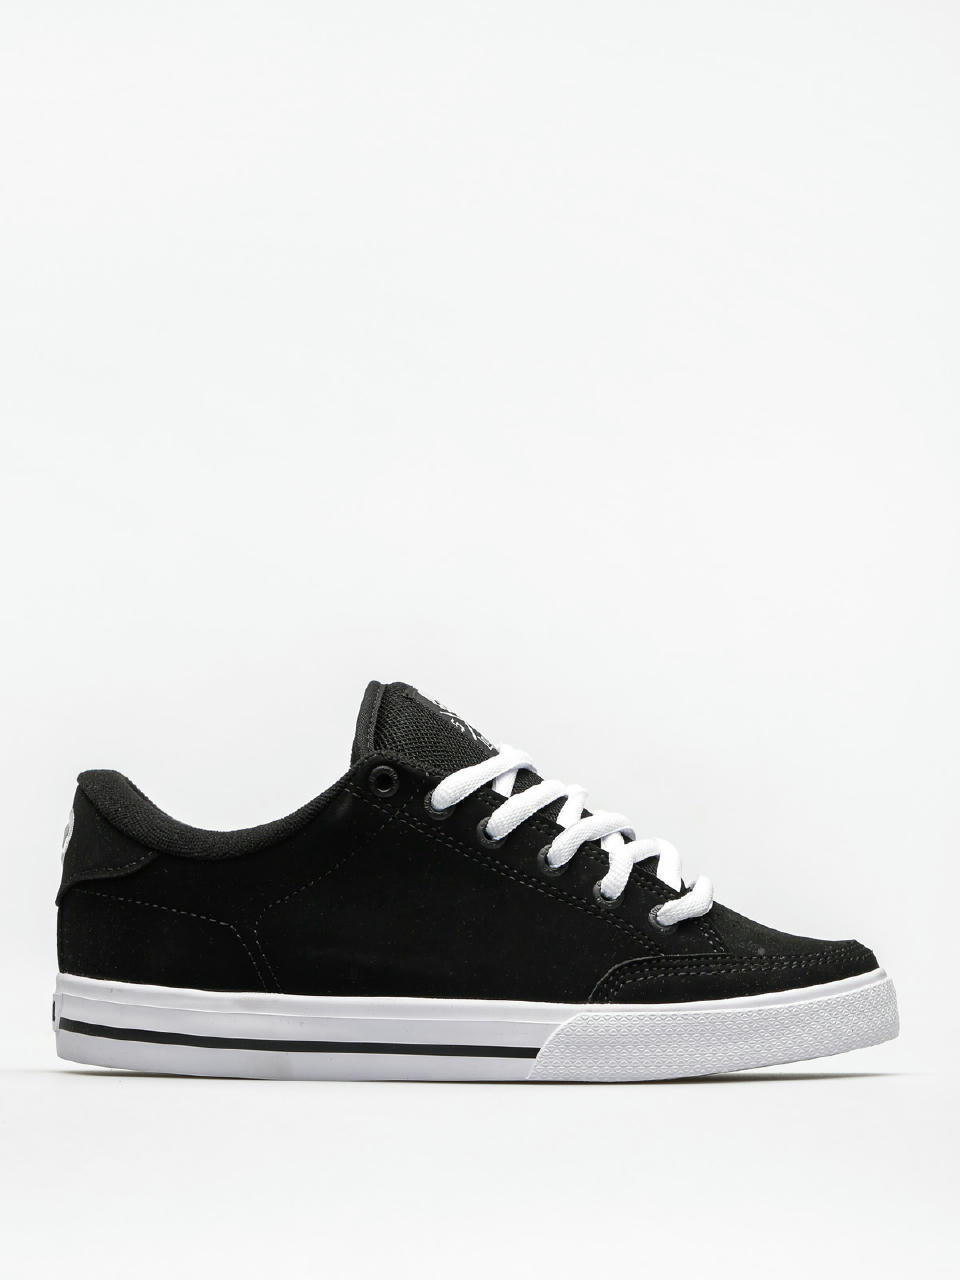 Circa Shoes Lopez 50 (black/white)